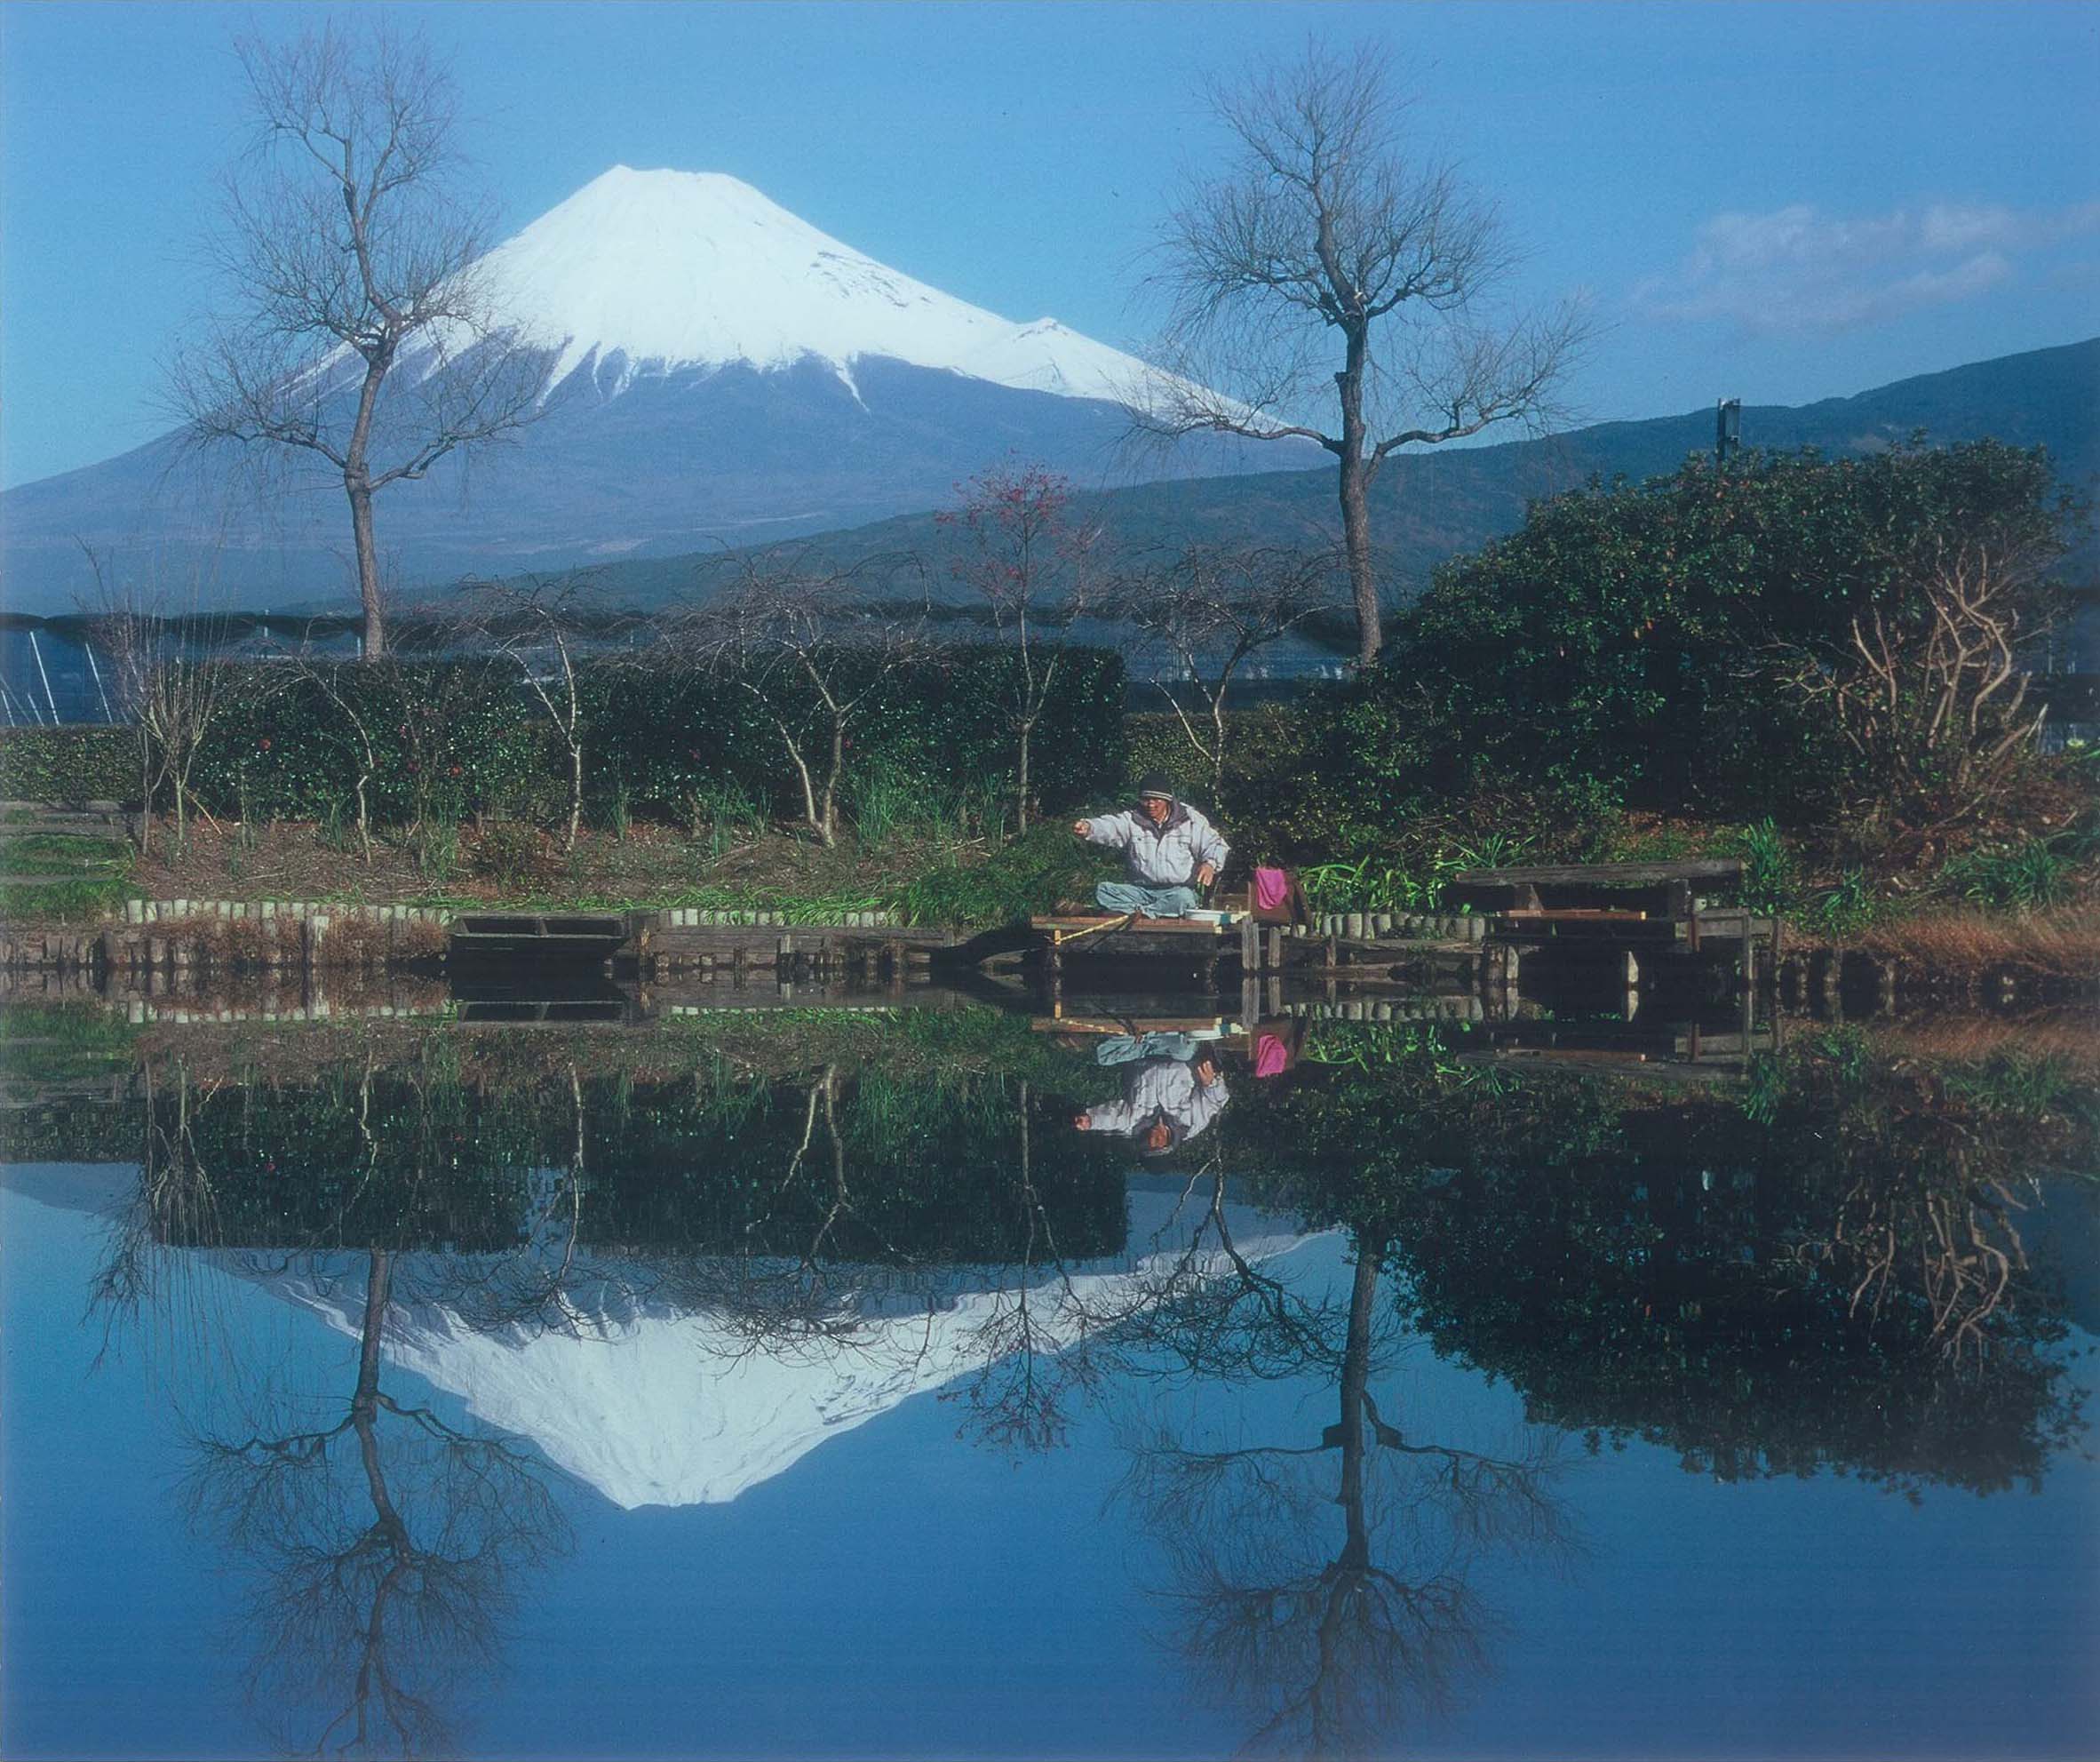 第03回富士山百景写真コンテスト エリア賞 「一人静かに」